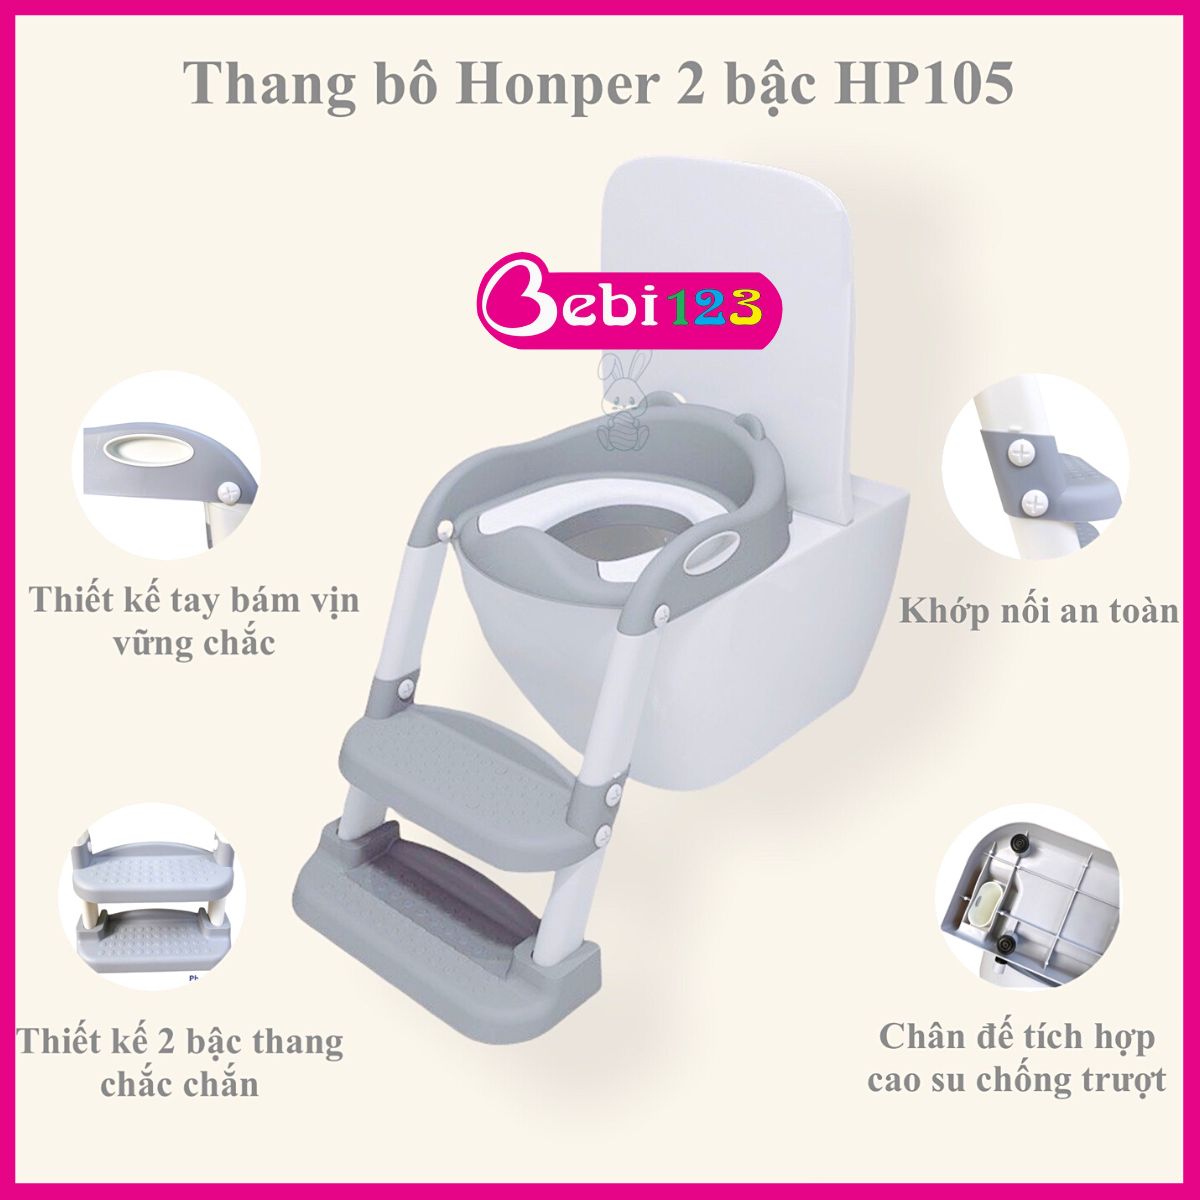 Thang bô vệ sinh Honper 2 bậc kèm bệ lót thu nhỏ bồn cầu, có tay vịn gấp gọn an toàn cho bé yêu